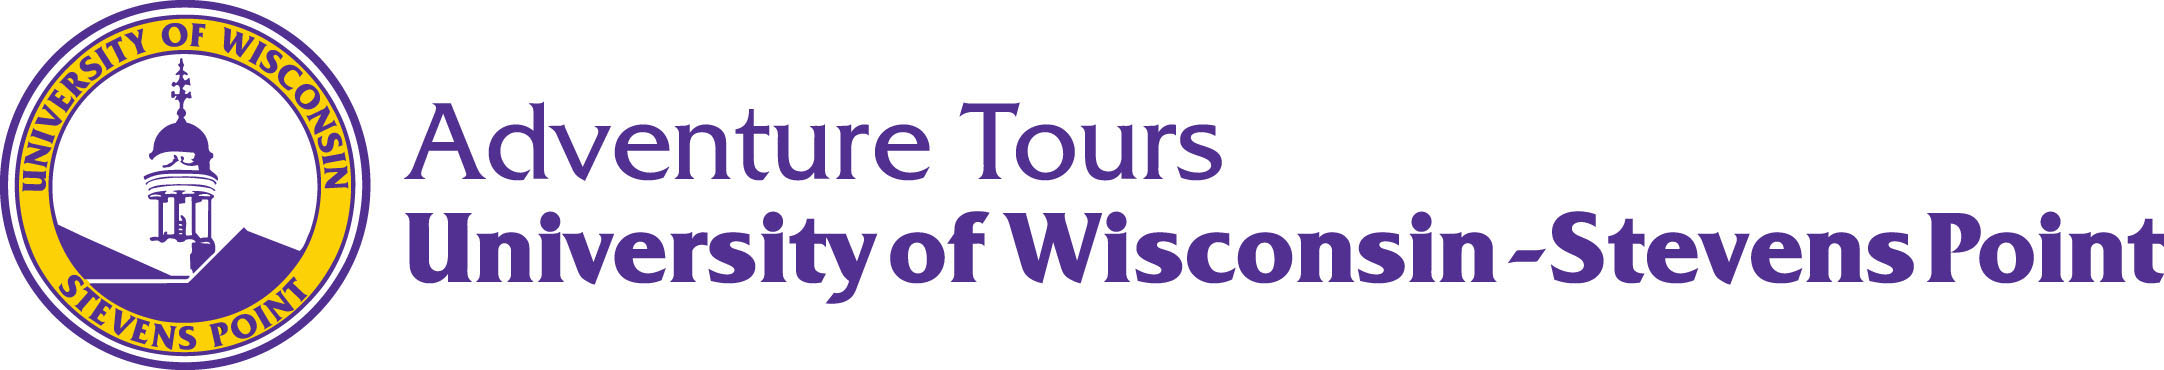 UWSP Adventure Tours